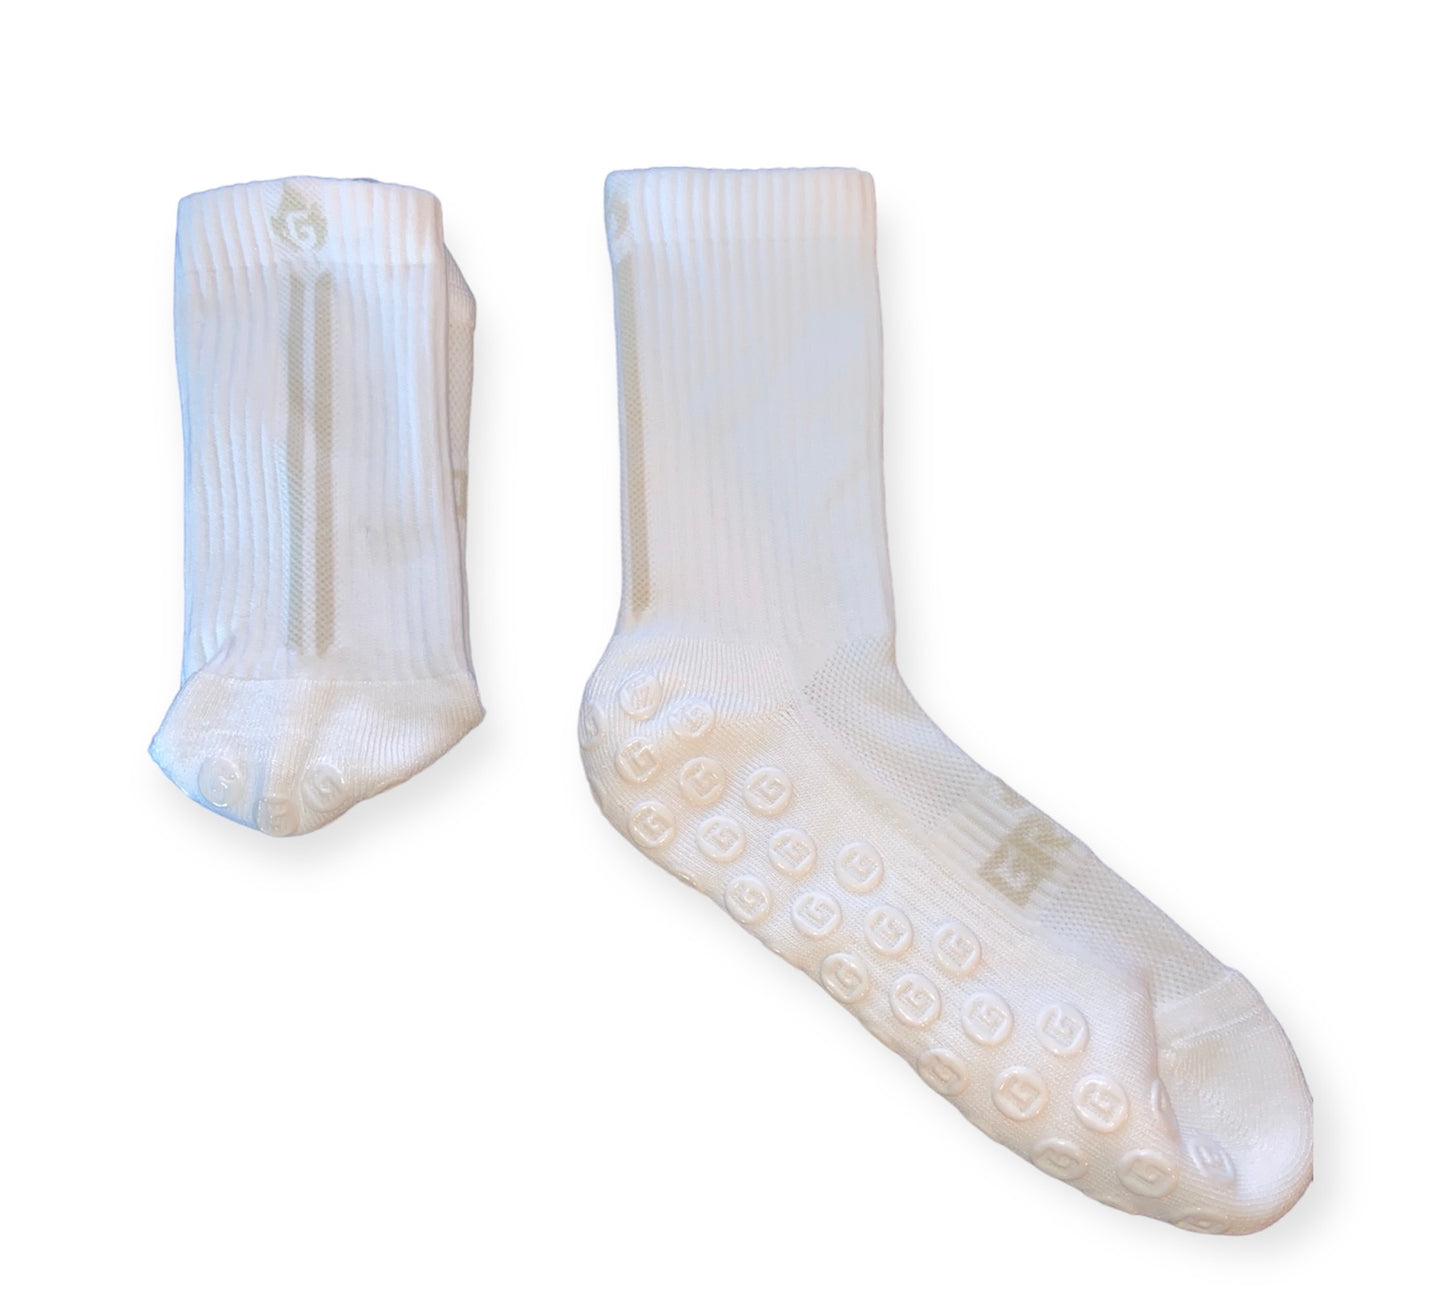 Grinta gripSocks Non-Slip Soccer Socks